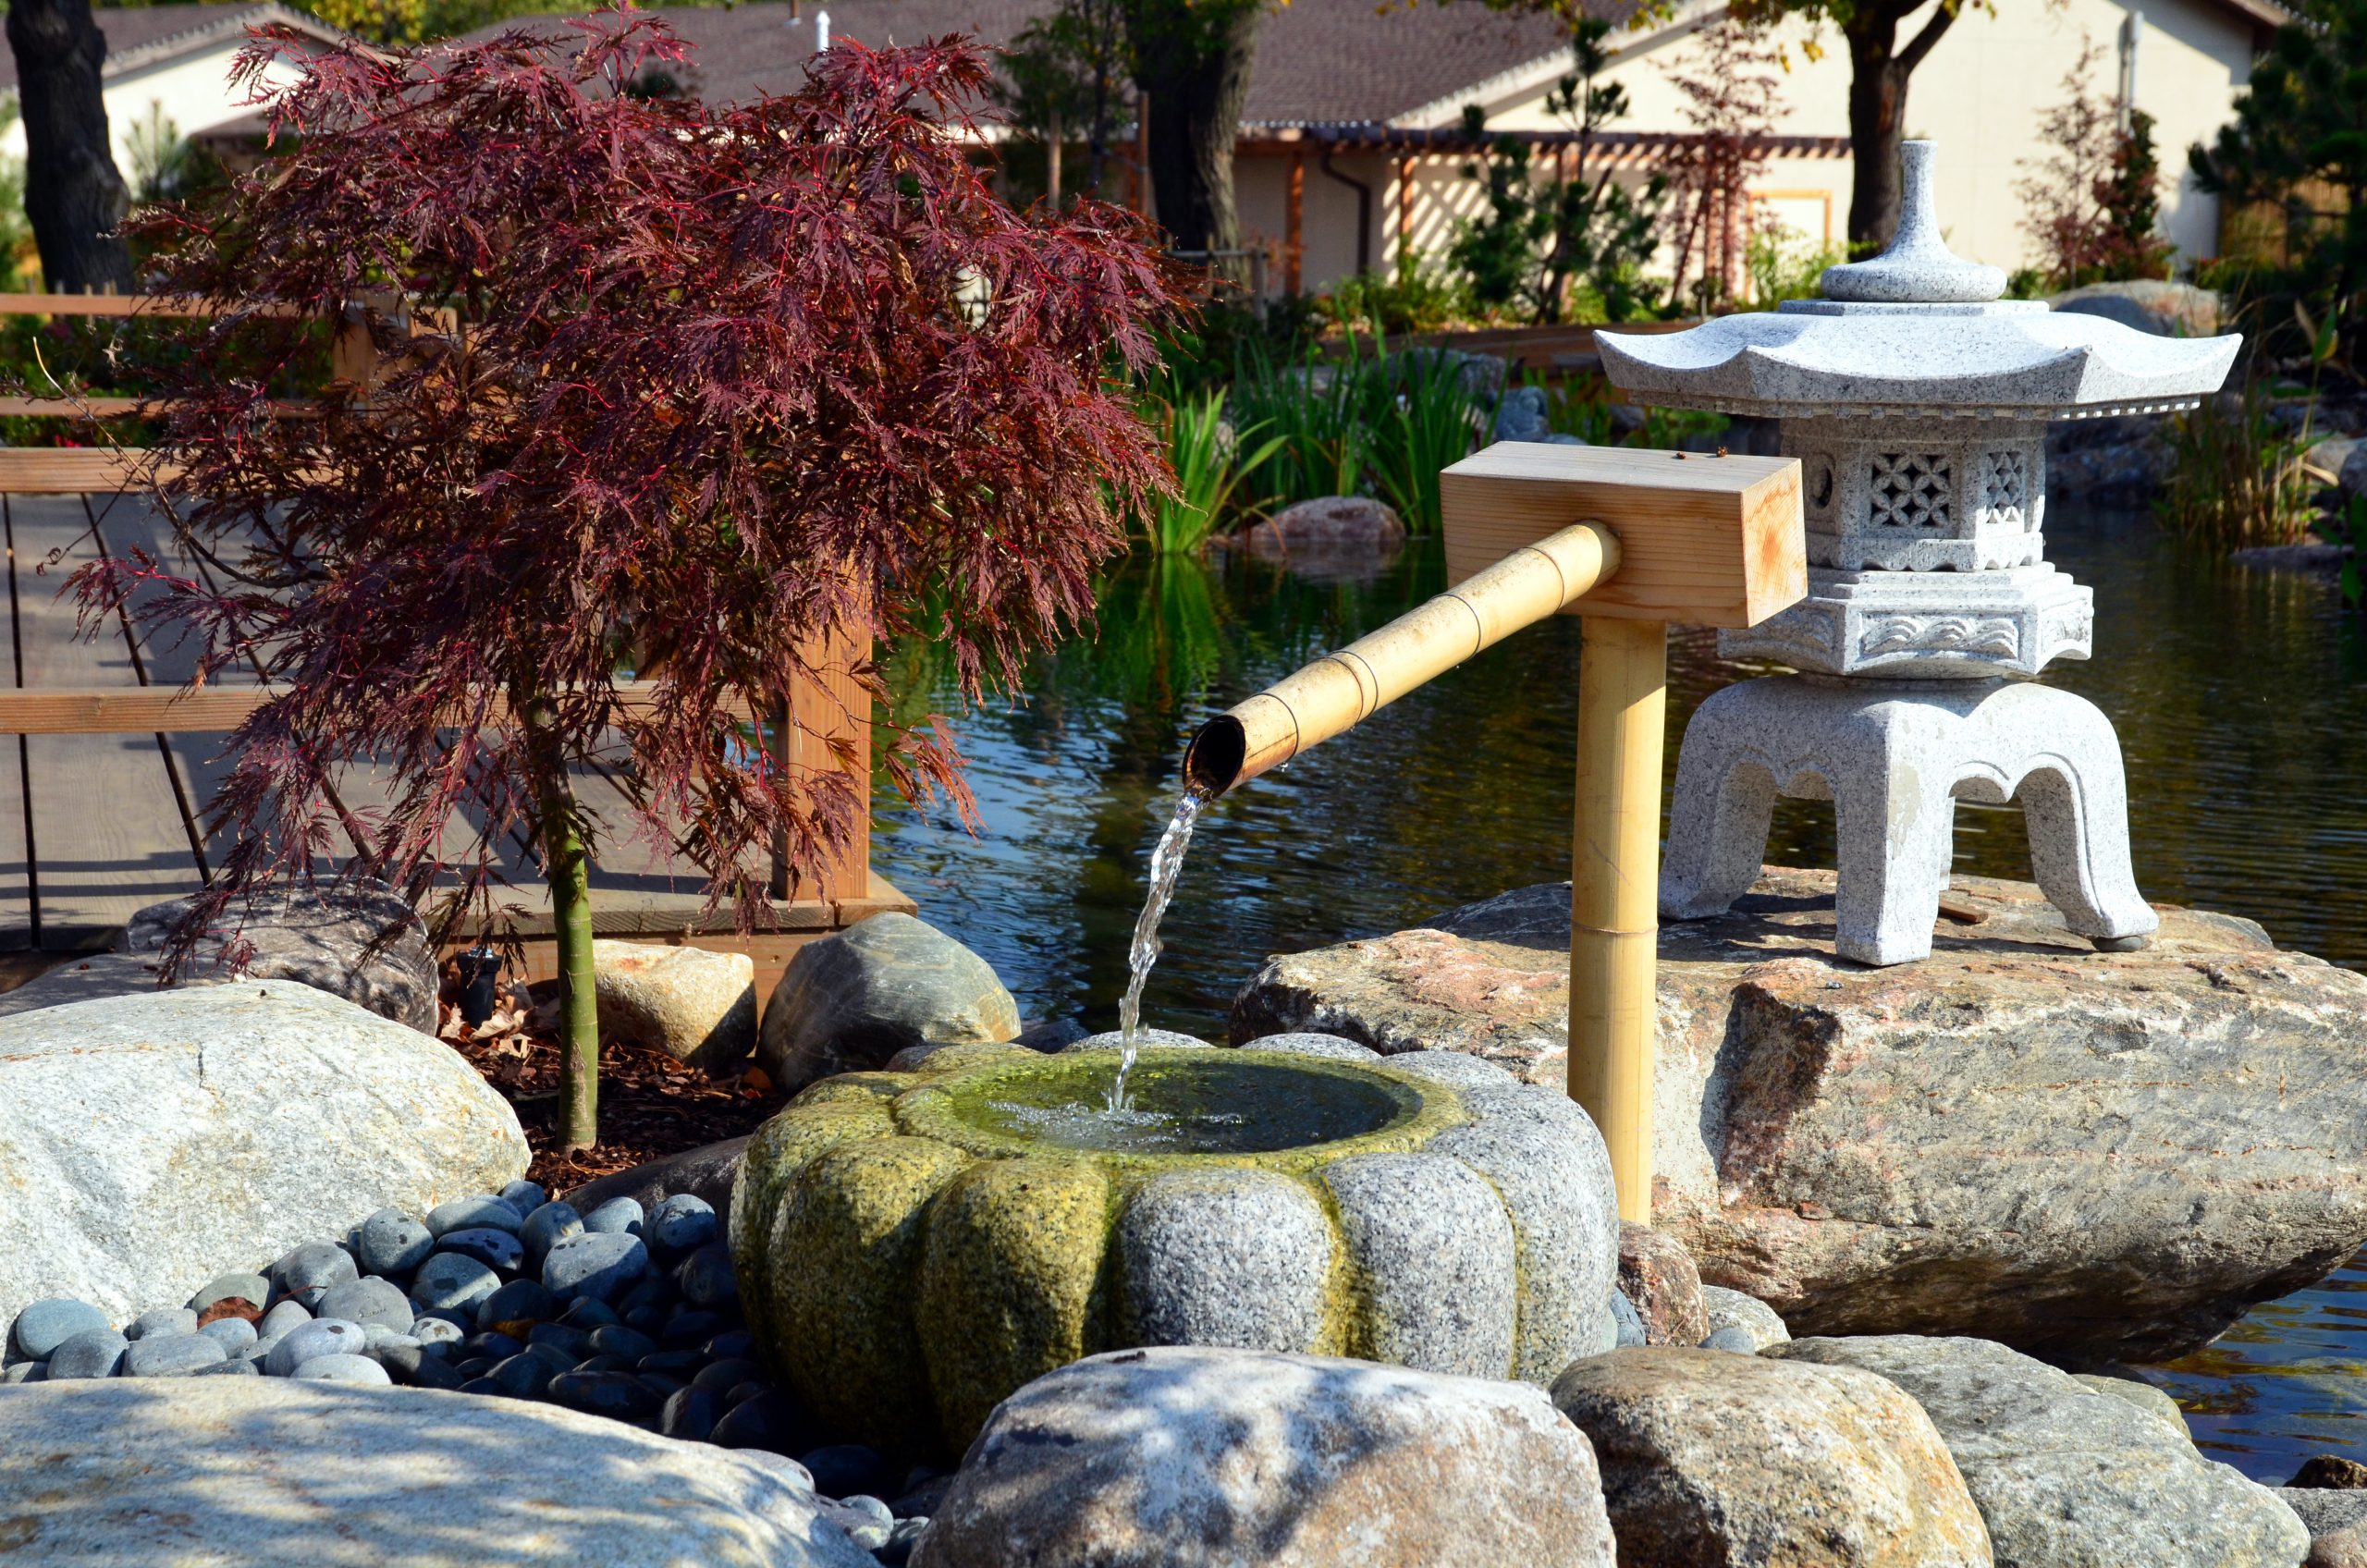 Kay McFarland Japanses Garden tea graden entrance fountian